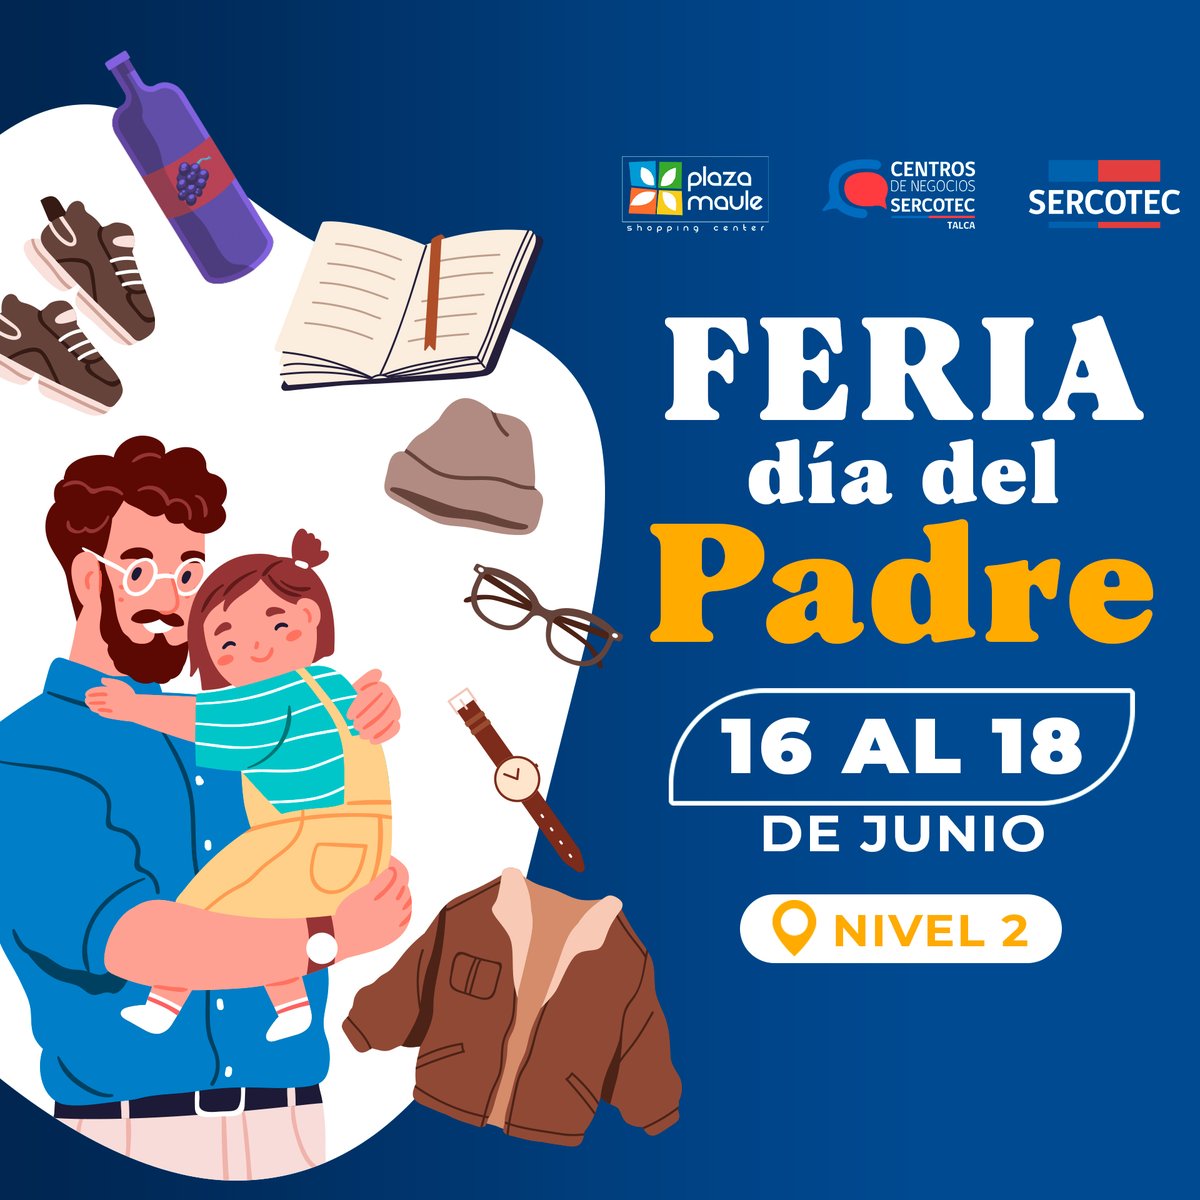 ¡Todo para Papá 👨!

Junto a @cdn.talca te esperamos en la Feria Día Del Padre, llena de productos y souvenirs perfectos para regalonear a Papá

Nivel 2 📍

#PlazaMauleElMejorLugar #Talca #DíaDeLaMadre